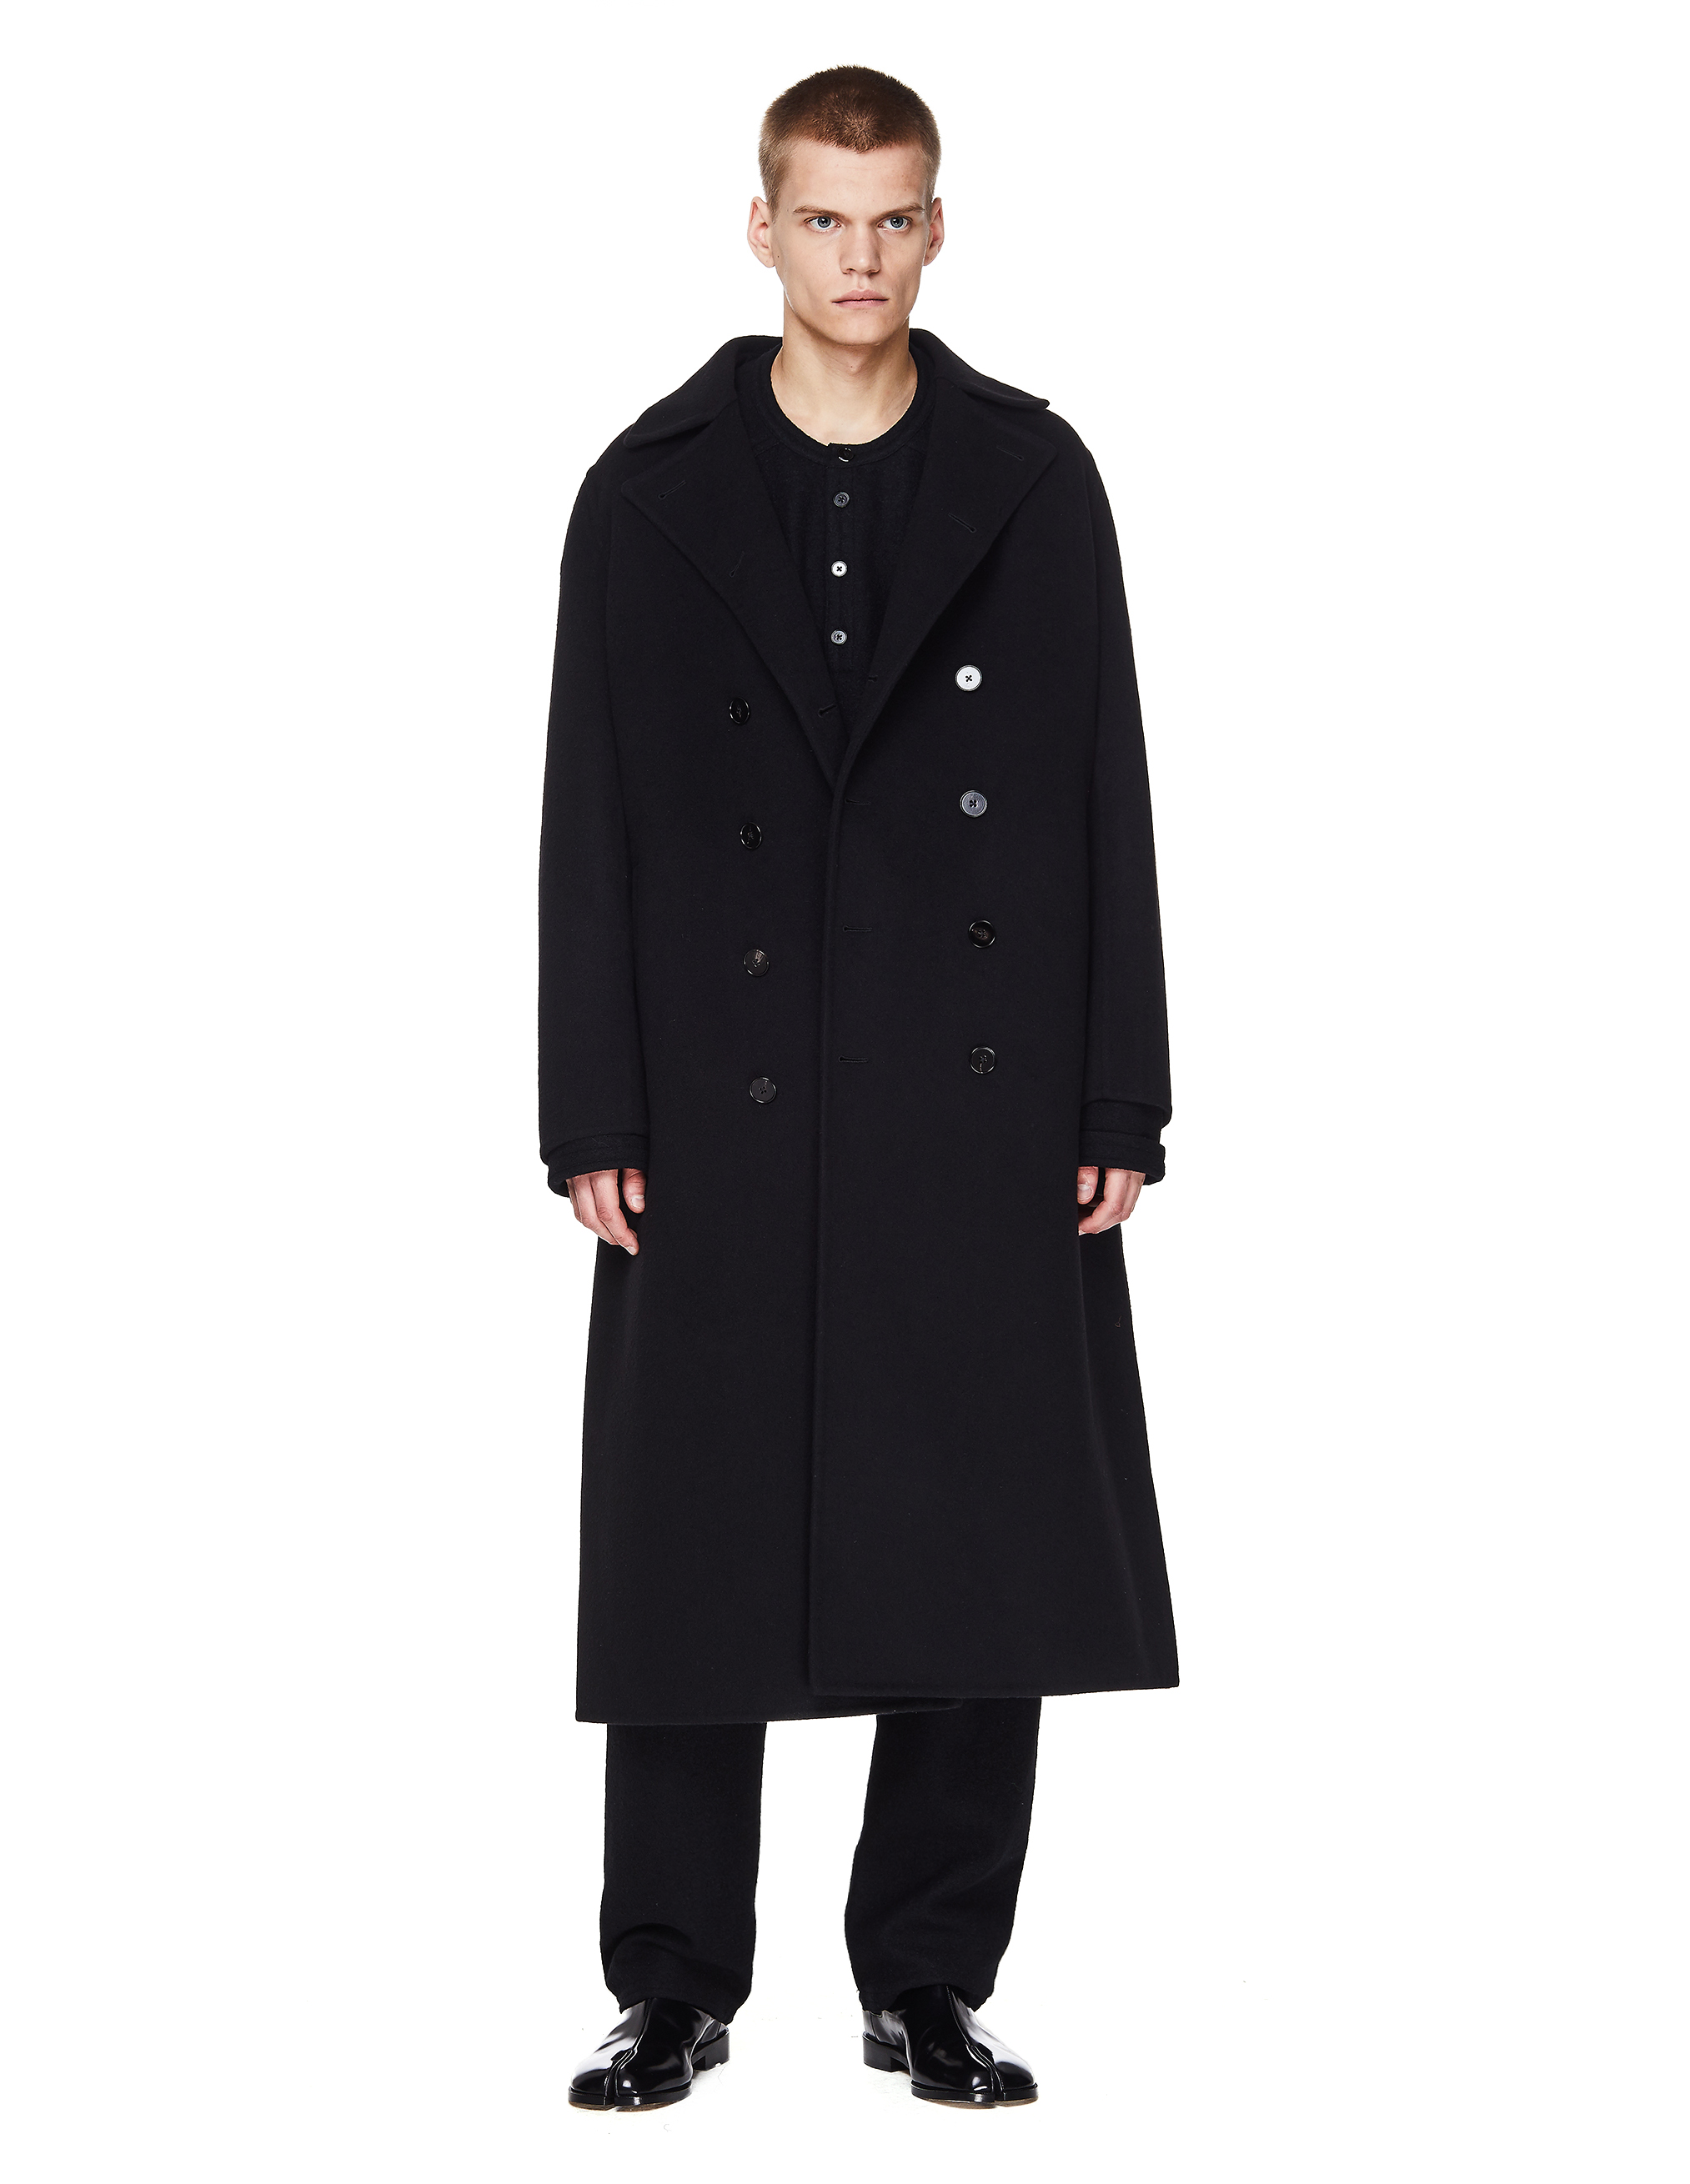 Черное кашемировое пальто с поясом - Jil Sander JSMR120103/MR100103/001 Фото 4